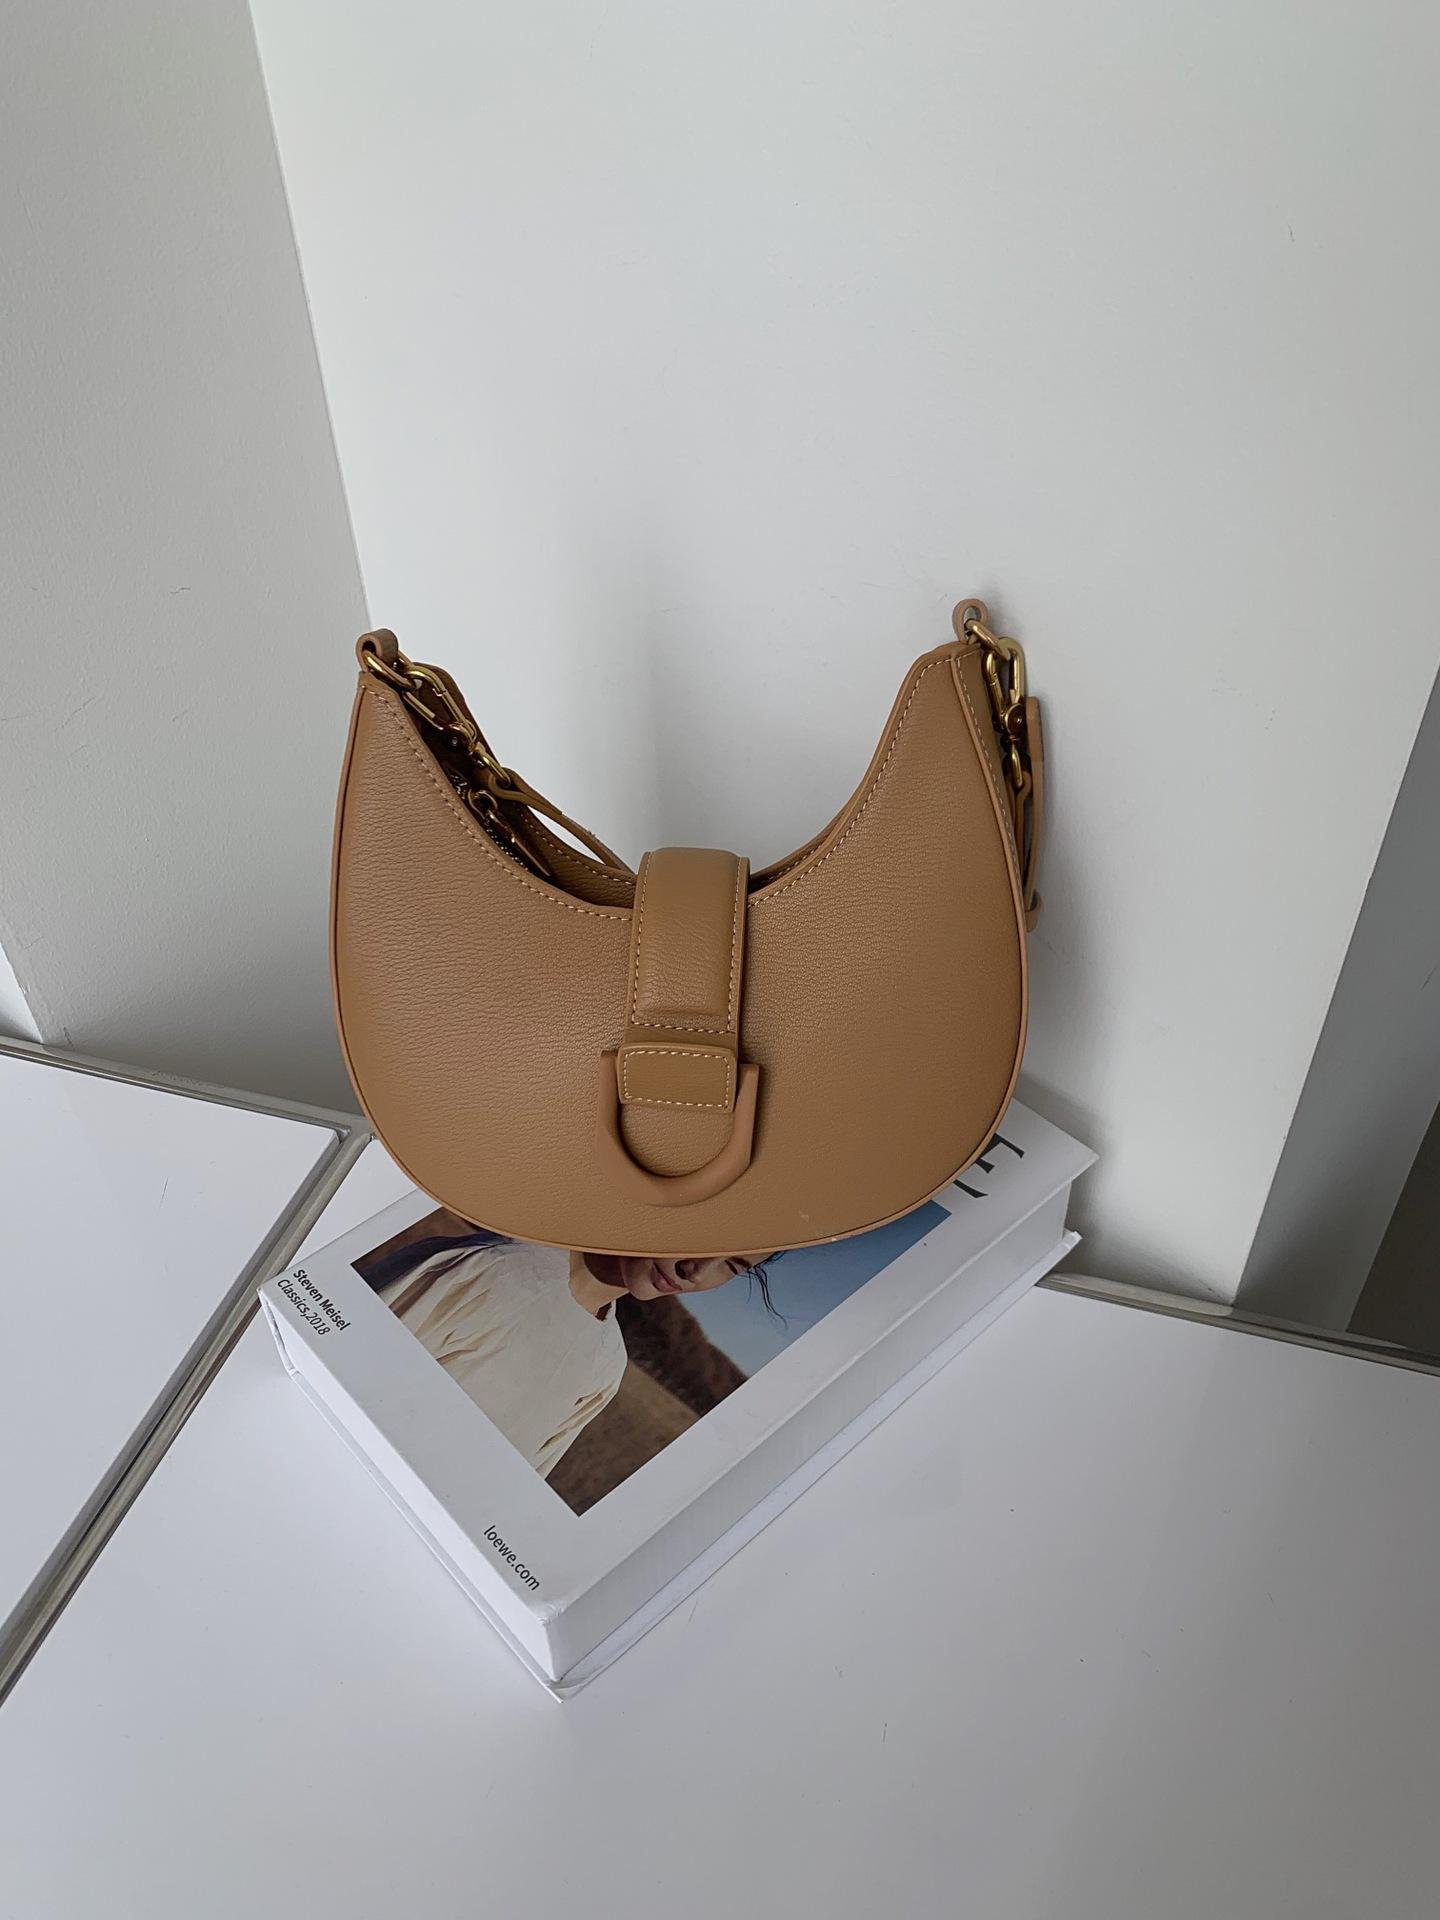 High quality leather saddle bag 5